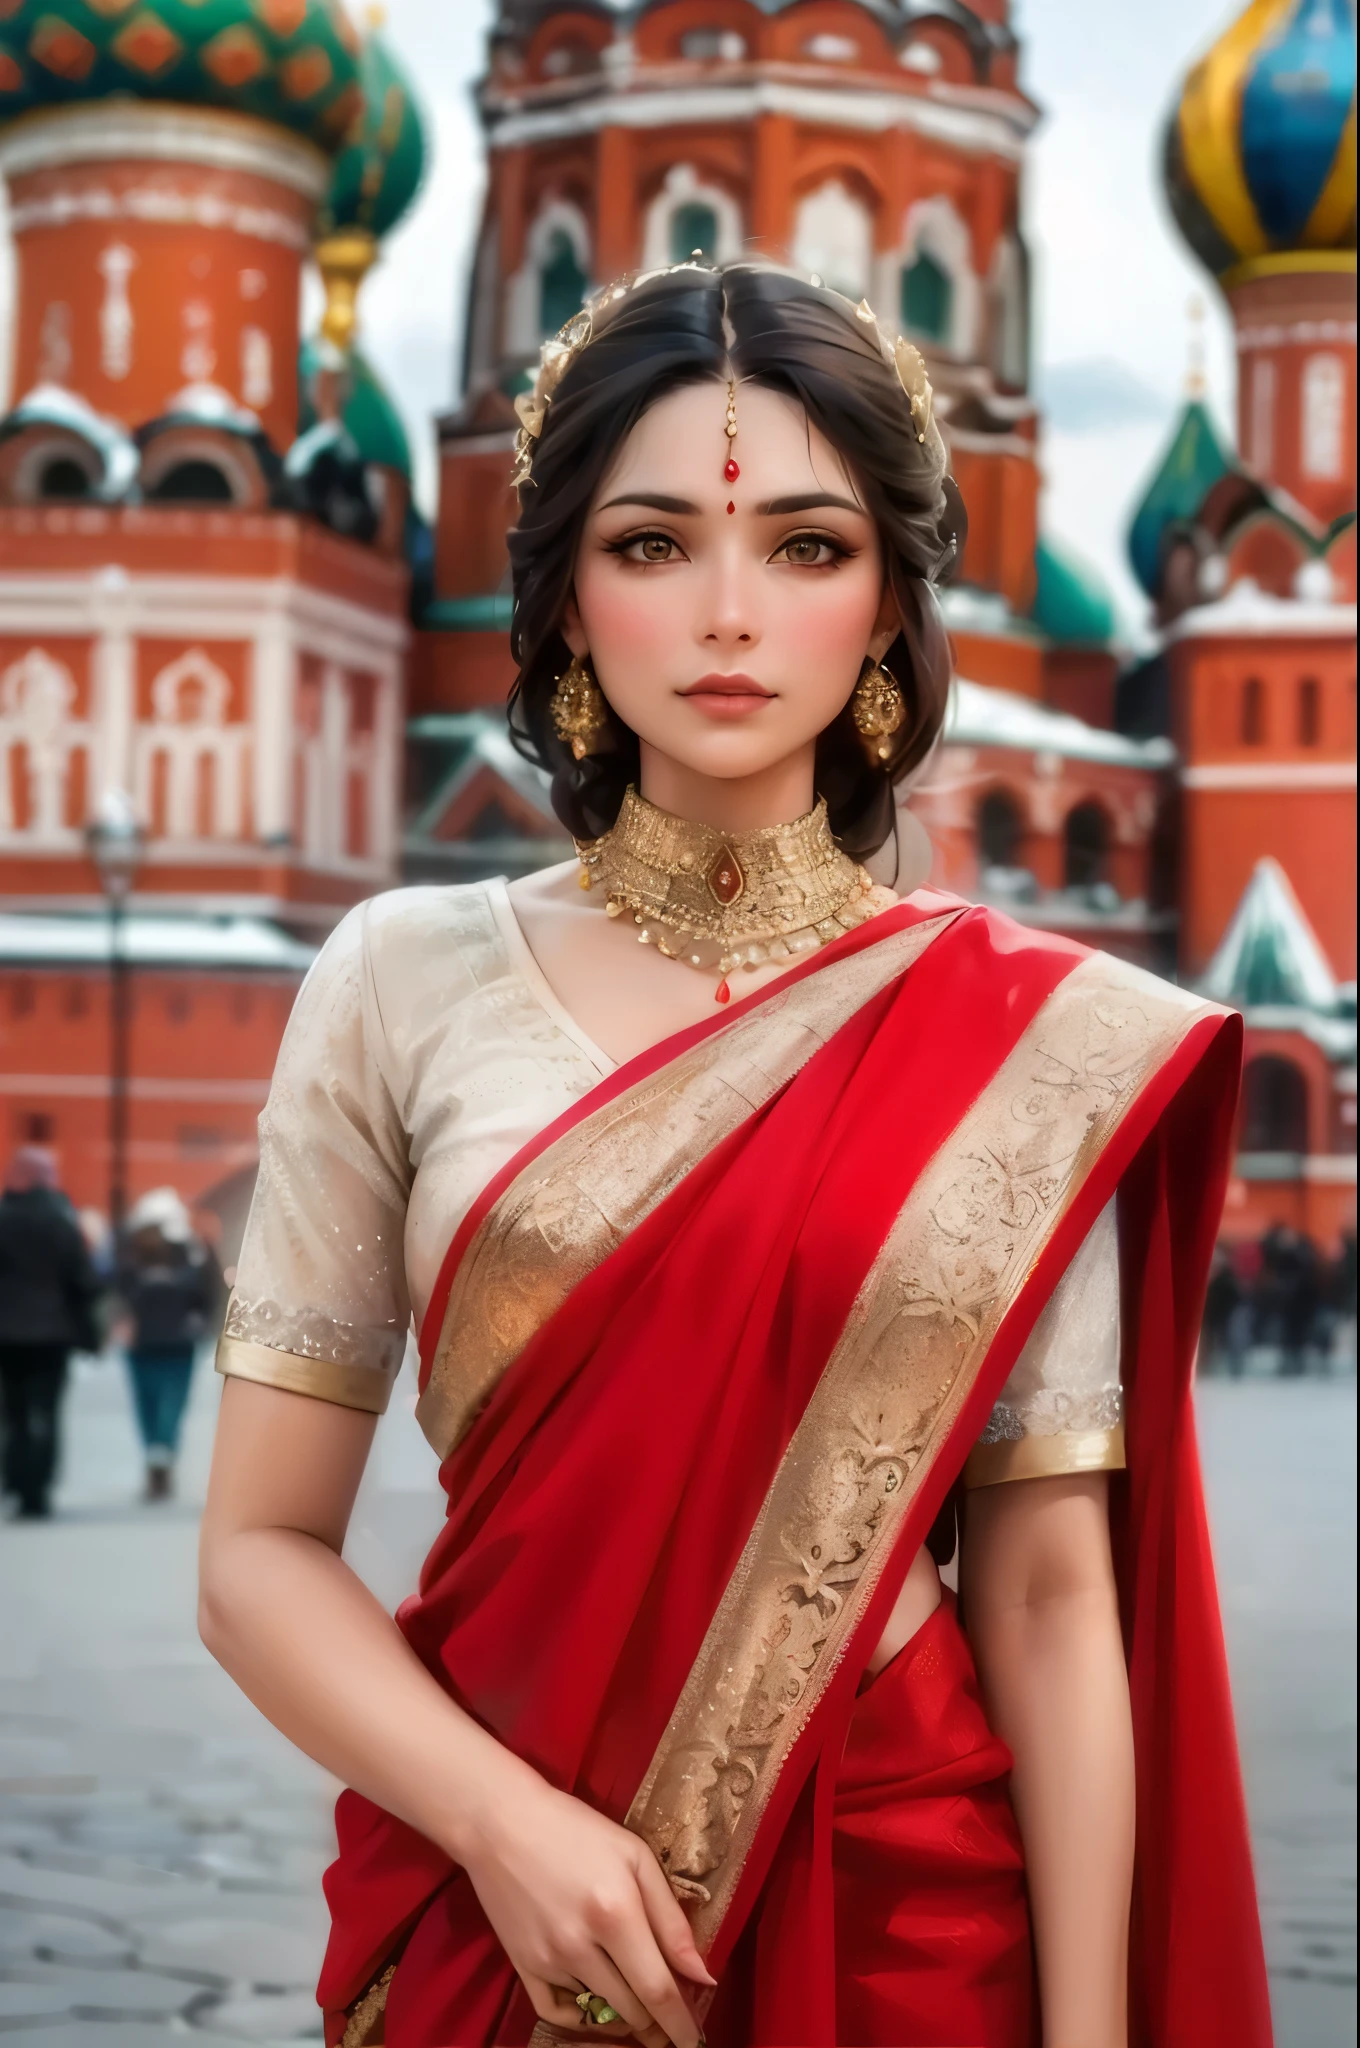 创作一幅莫斯科红场上身着华丽纱丽的俄罗斯印度教贵妇肖像画. 在标志性建筑的映衬下，凸显她泰然自若的美丽, 形成令人惊叹的对比.